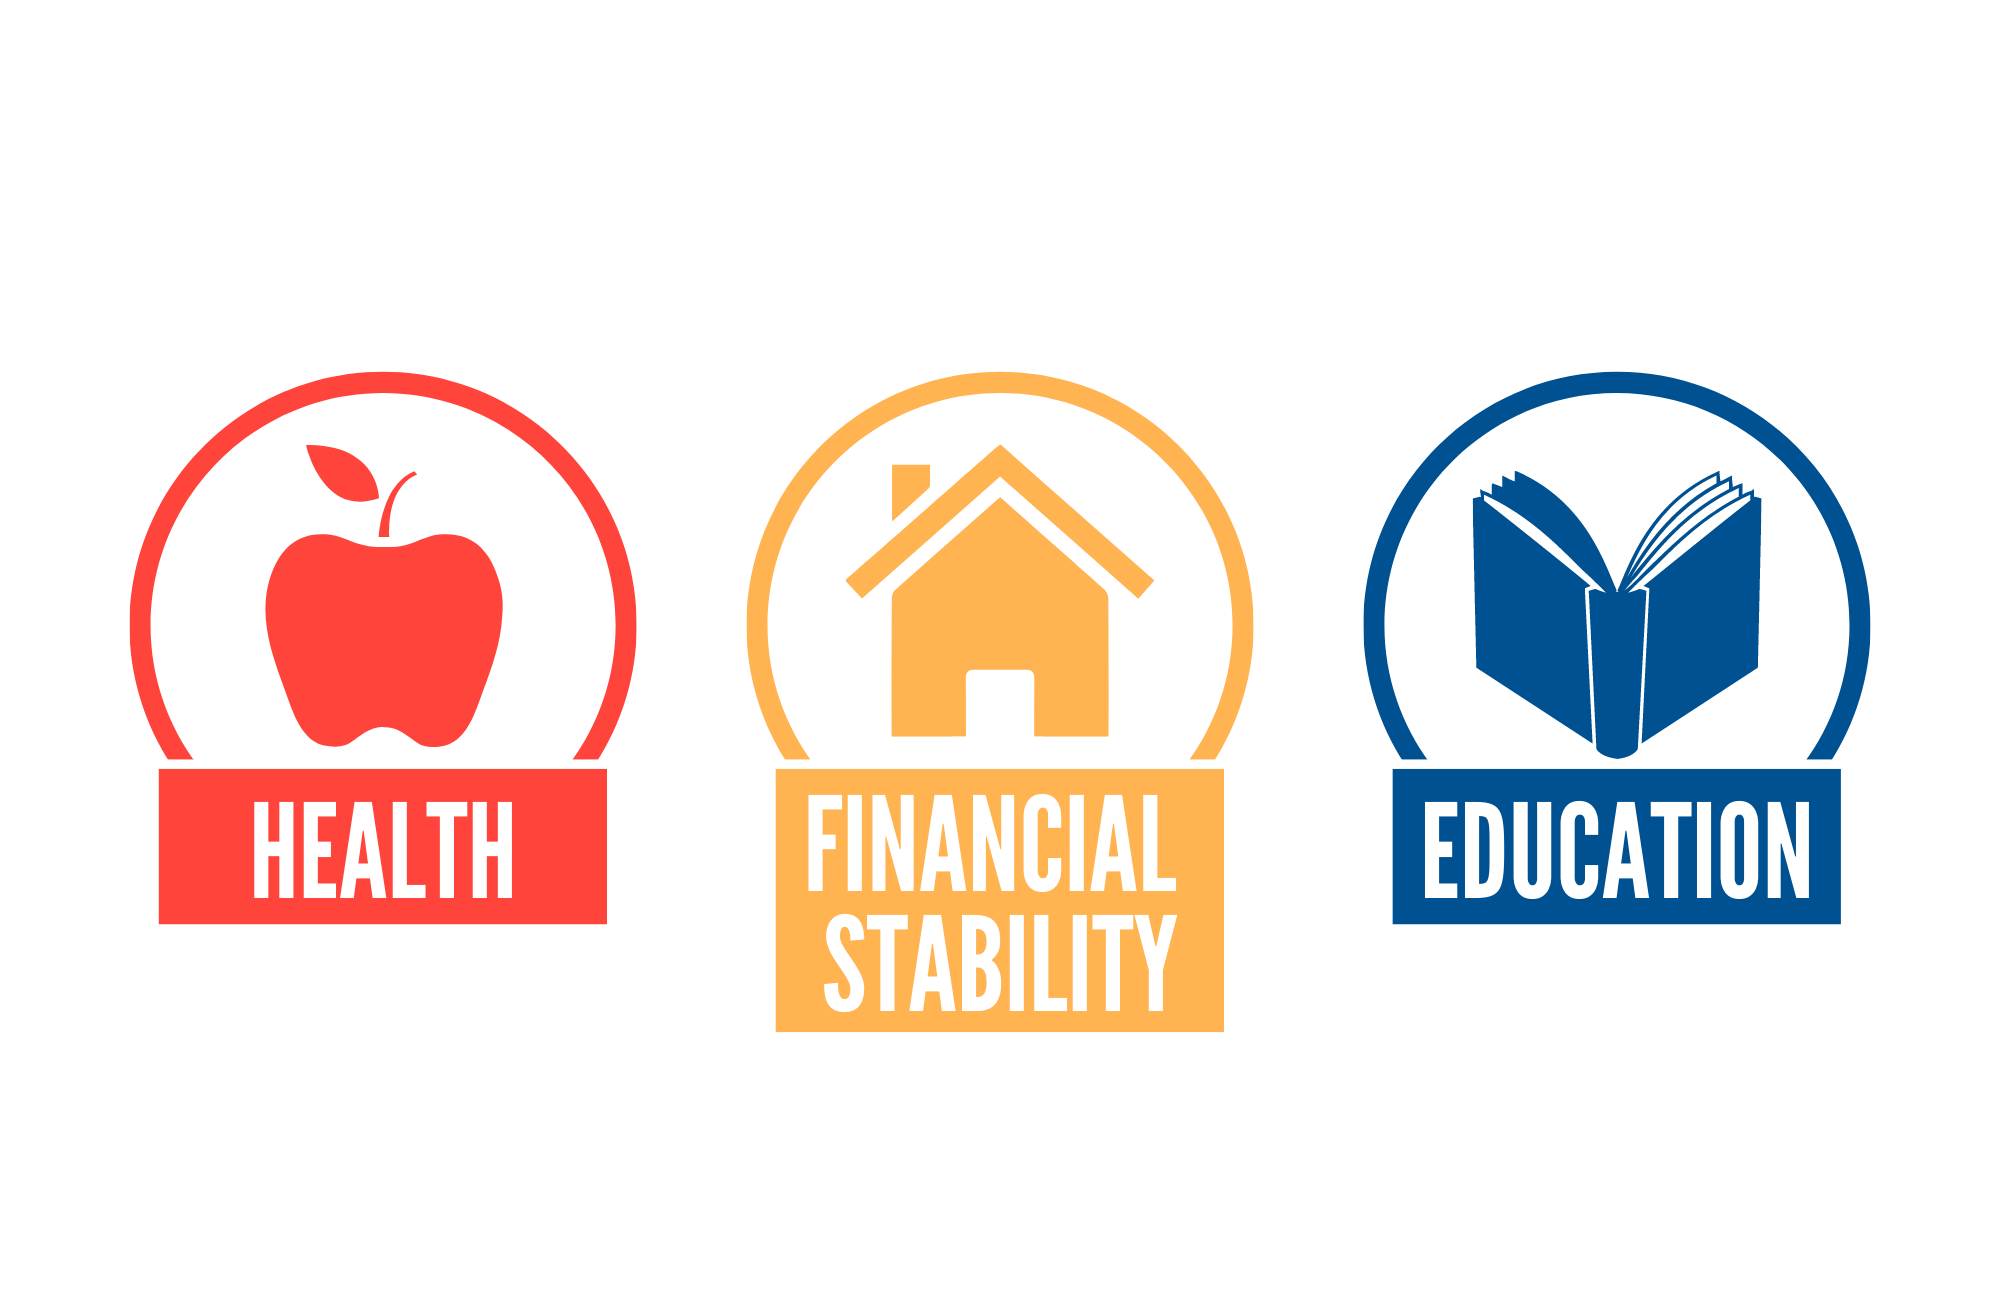 Heath, Financial Stability & Education